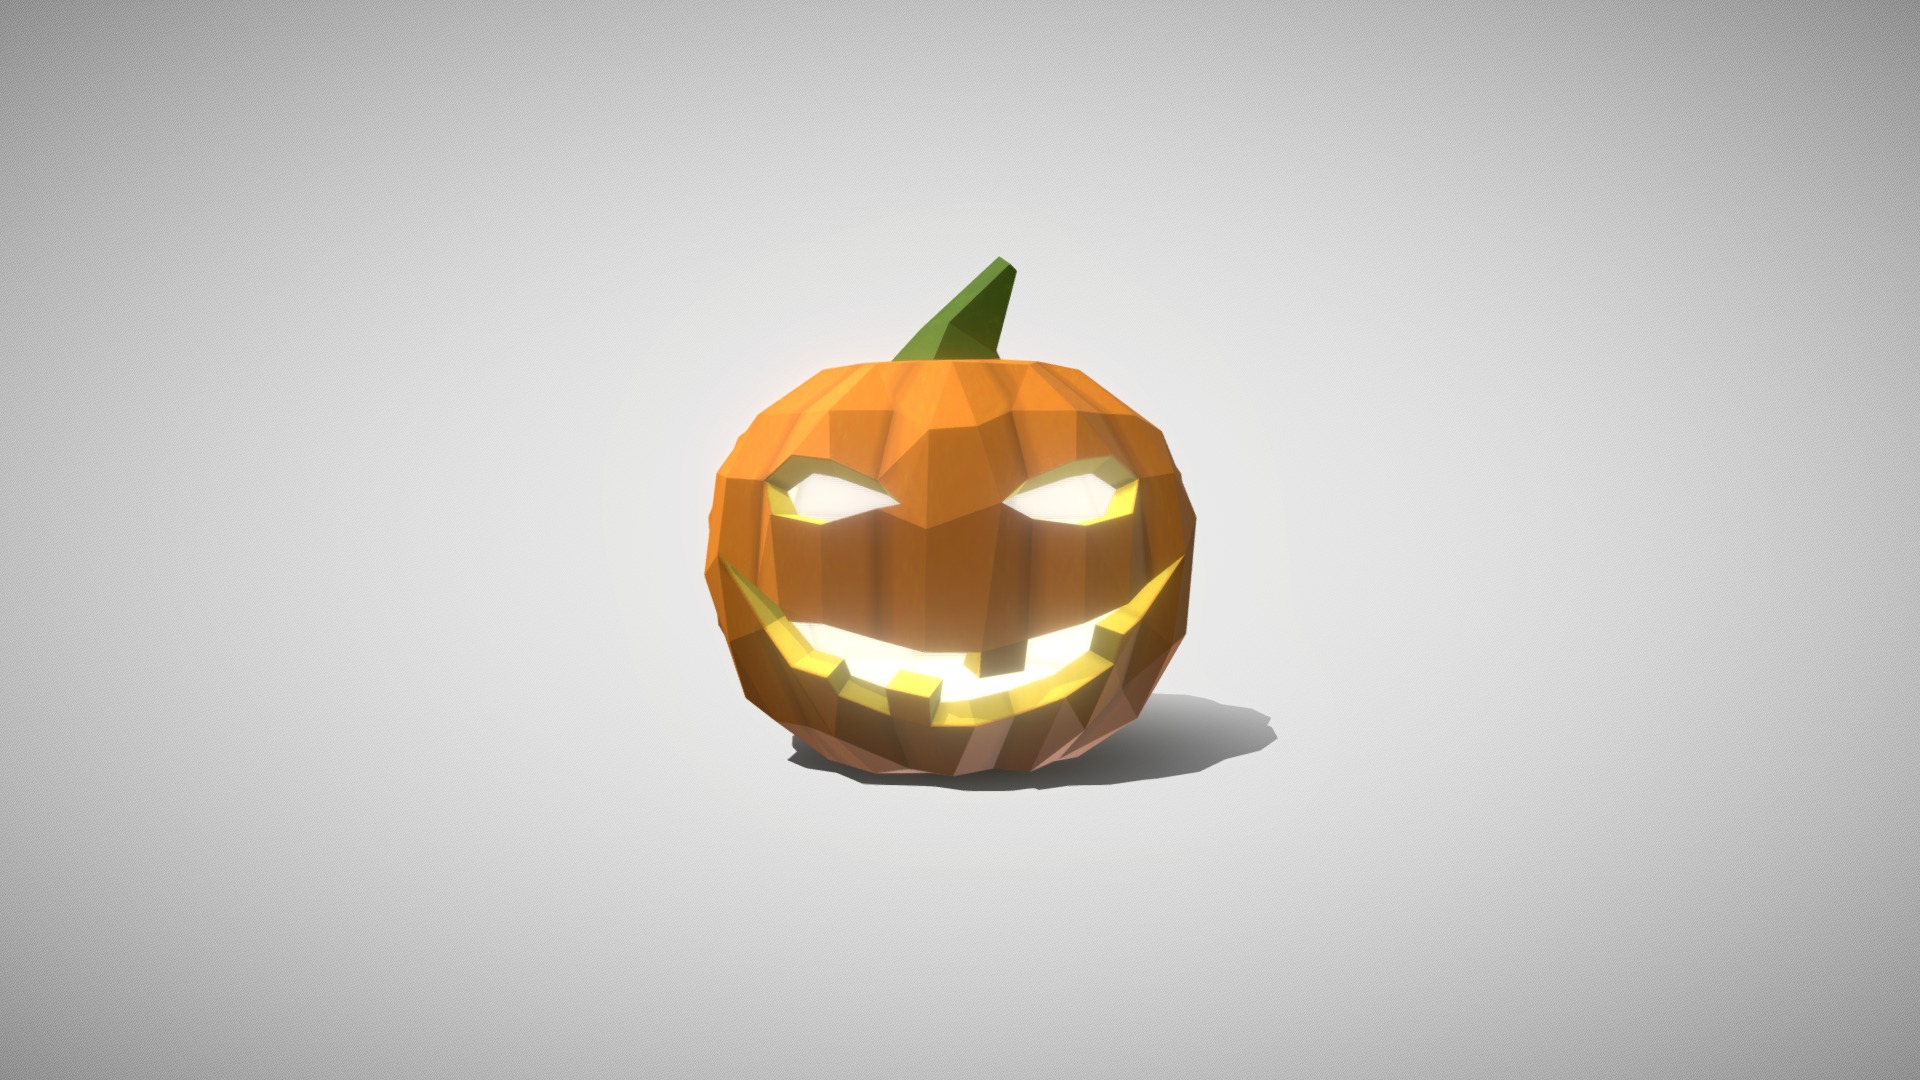 3D model Halloween pumpkin - This is a 3D model of the Halloween pumpkin. The 3D model is about a carved pumpkin with a light inside.